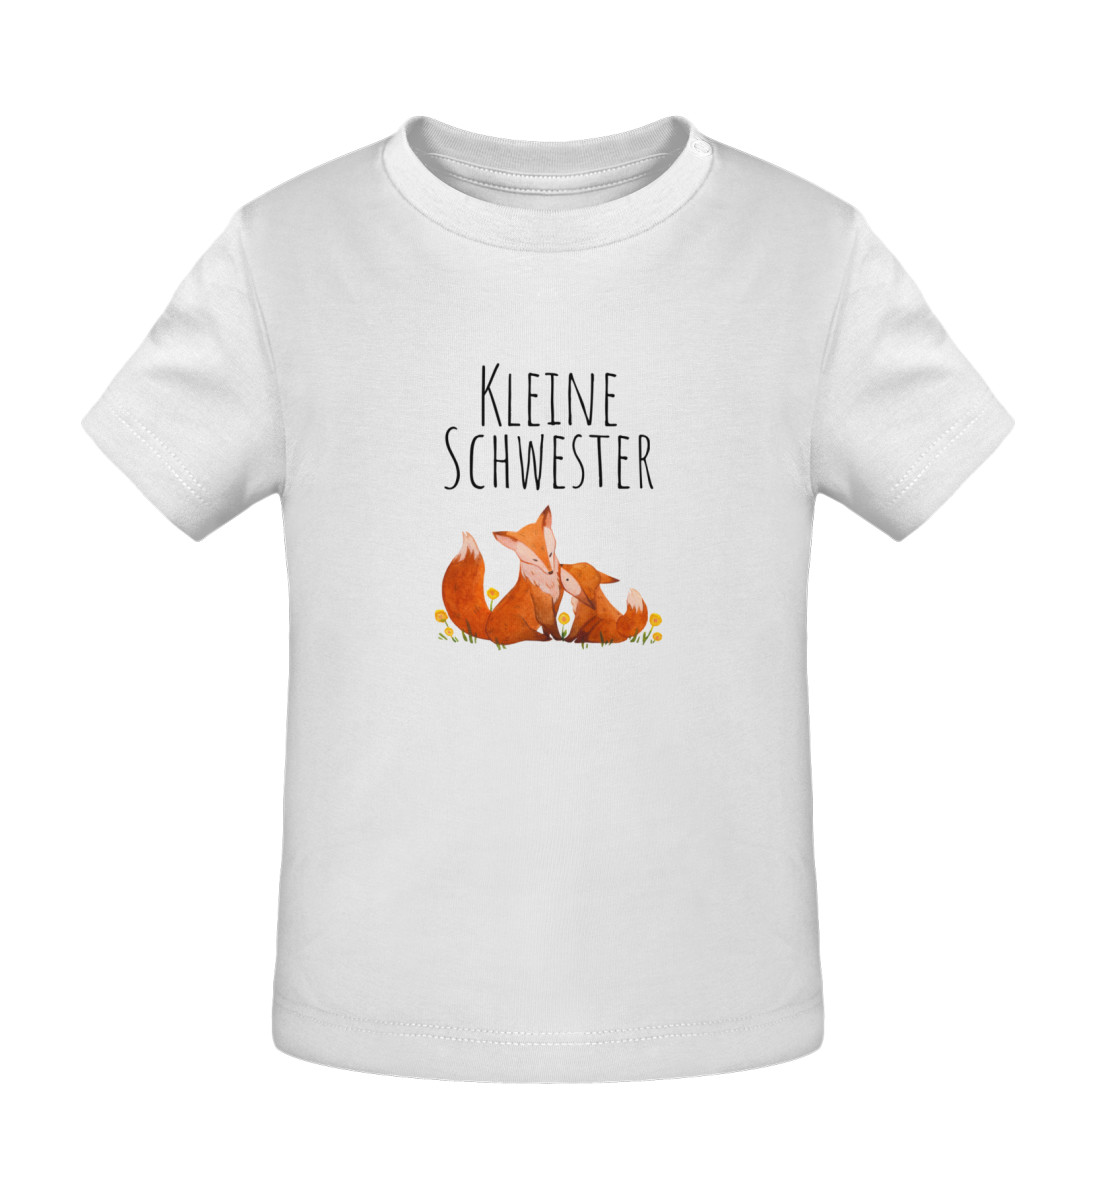 Kleine Schwester - Baby Creator T-Shirt ST/ST-3